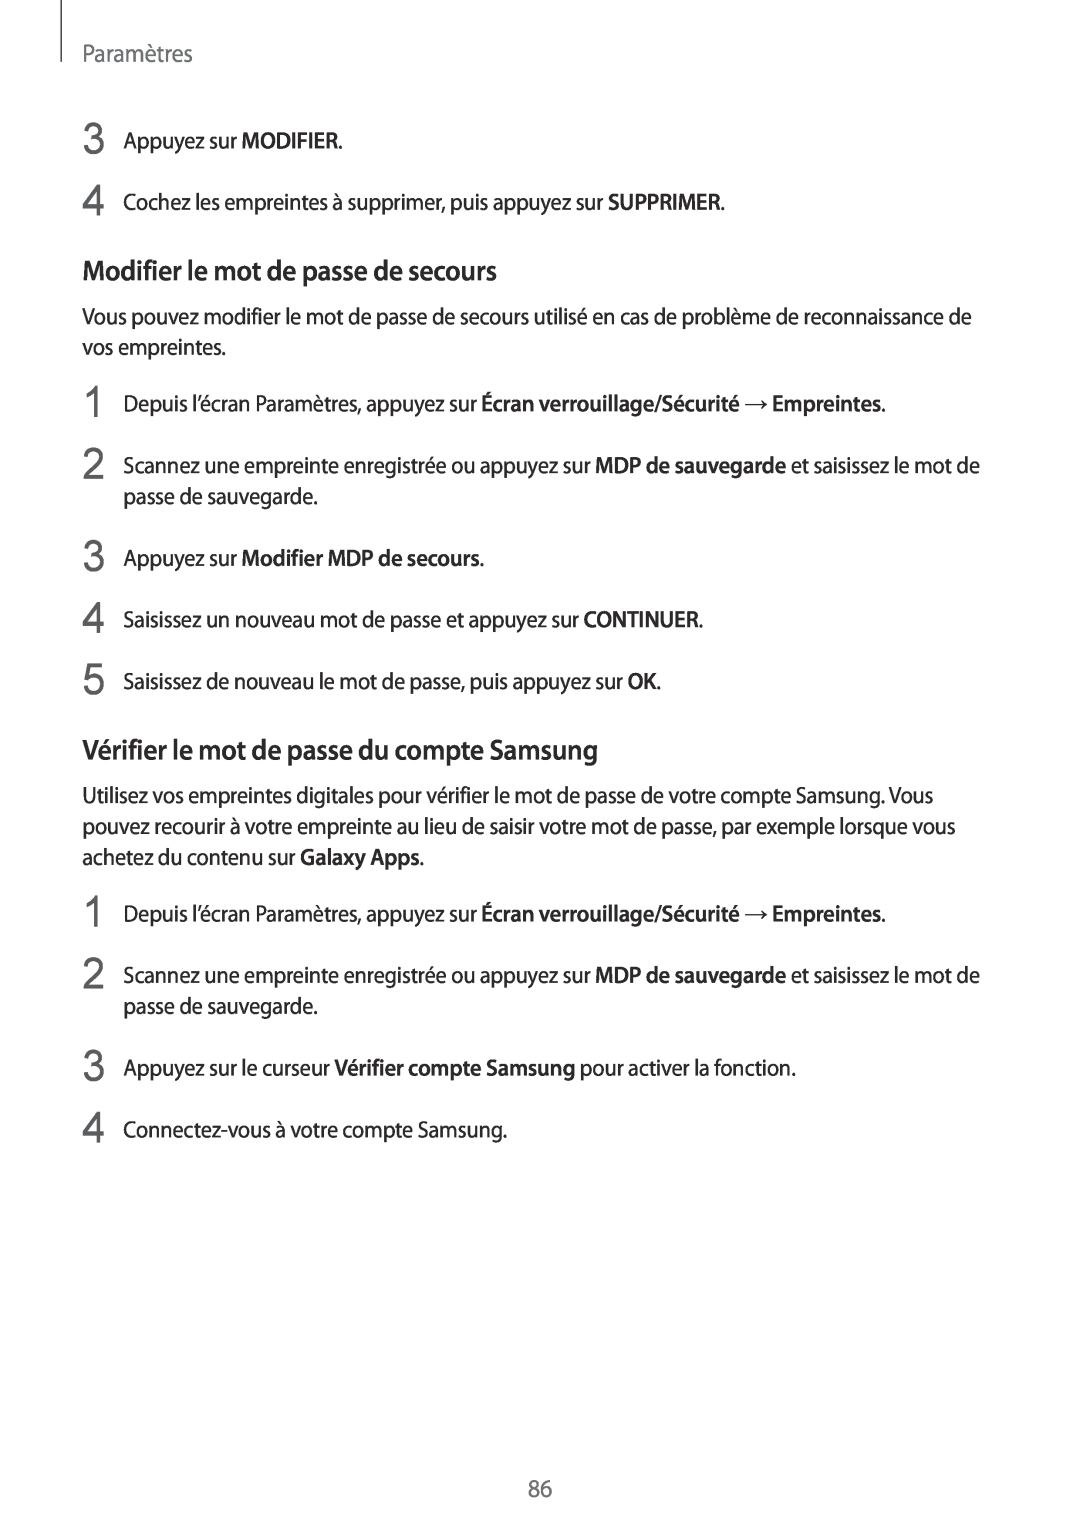 Samsung SM-T810NZWEXEF manual Modifier le mot de passe de secours, Vérifier le mot de passe du compte Samsung, Paramètres 